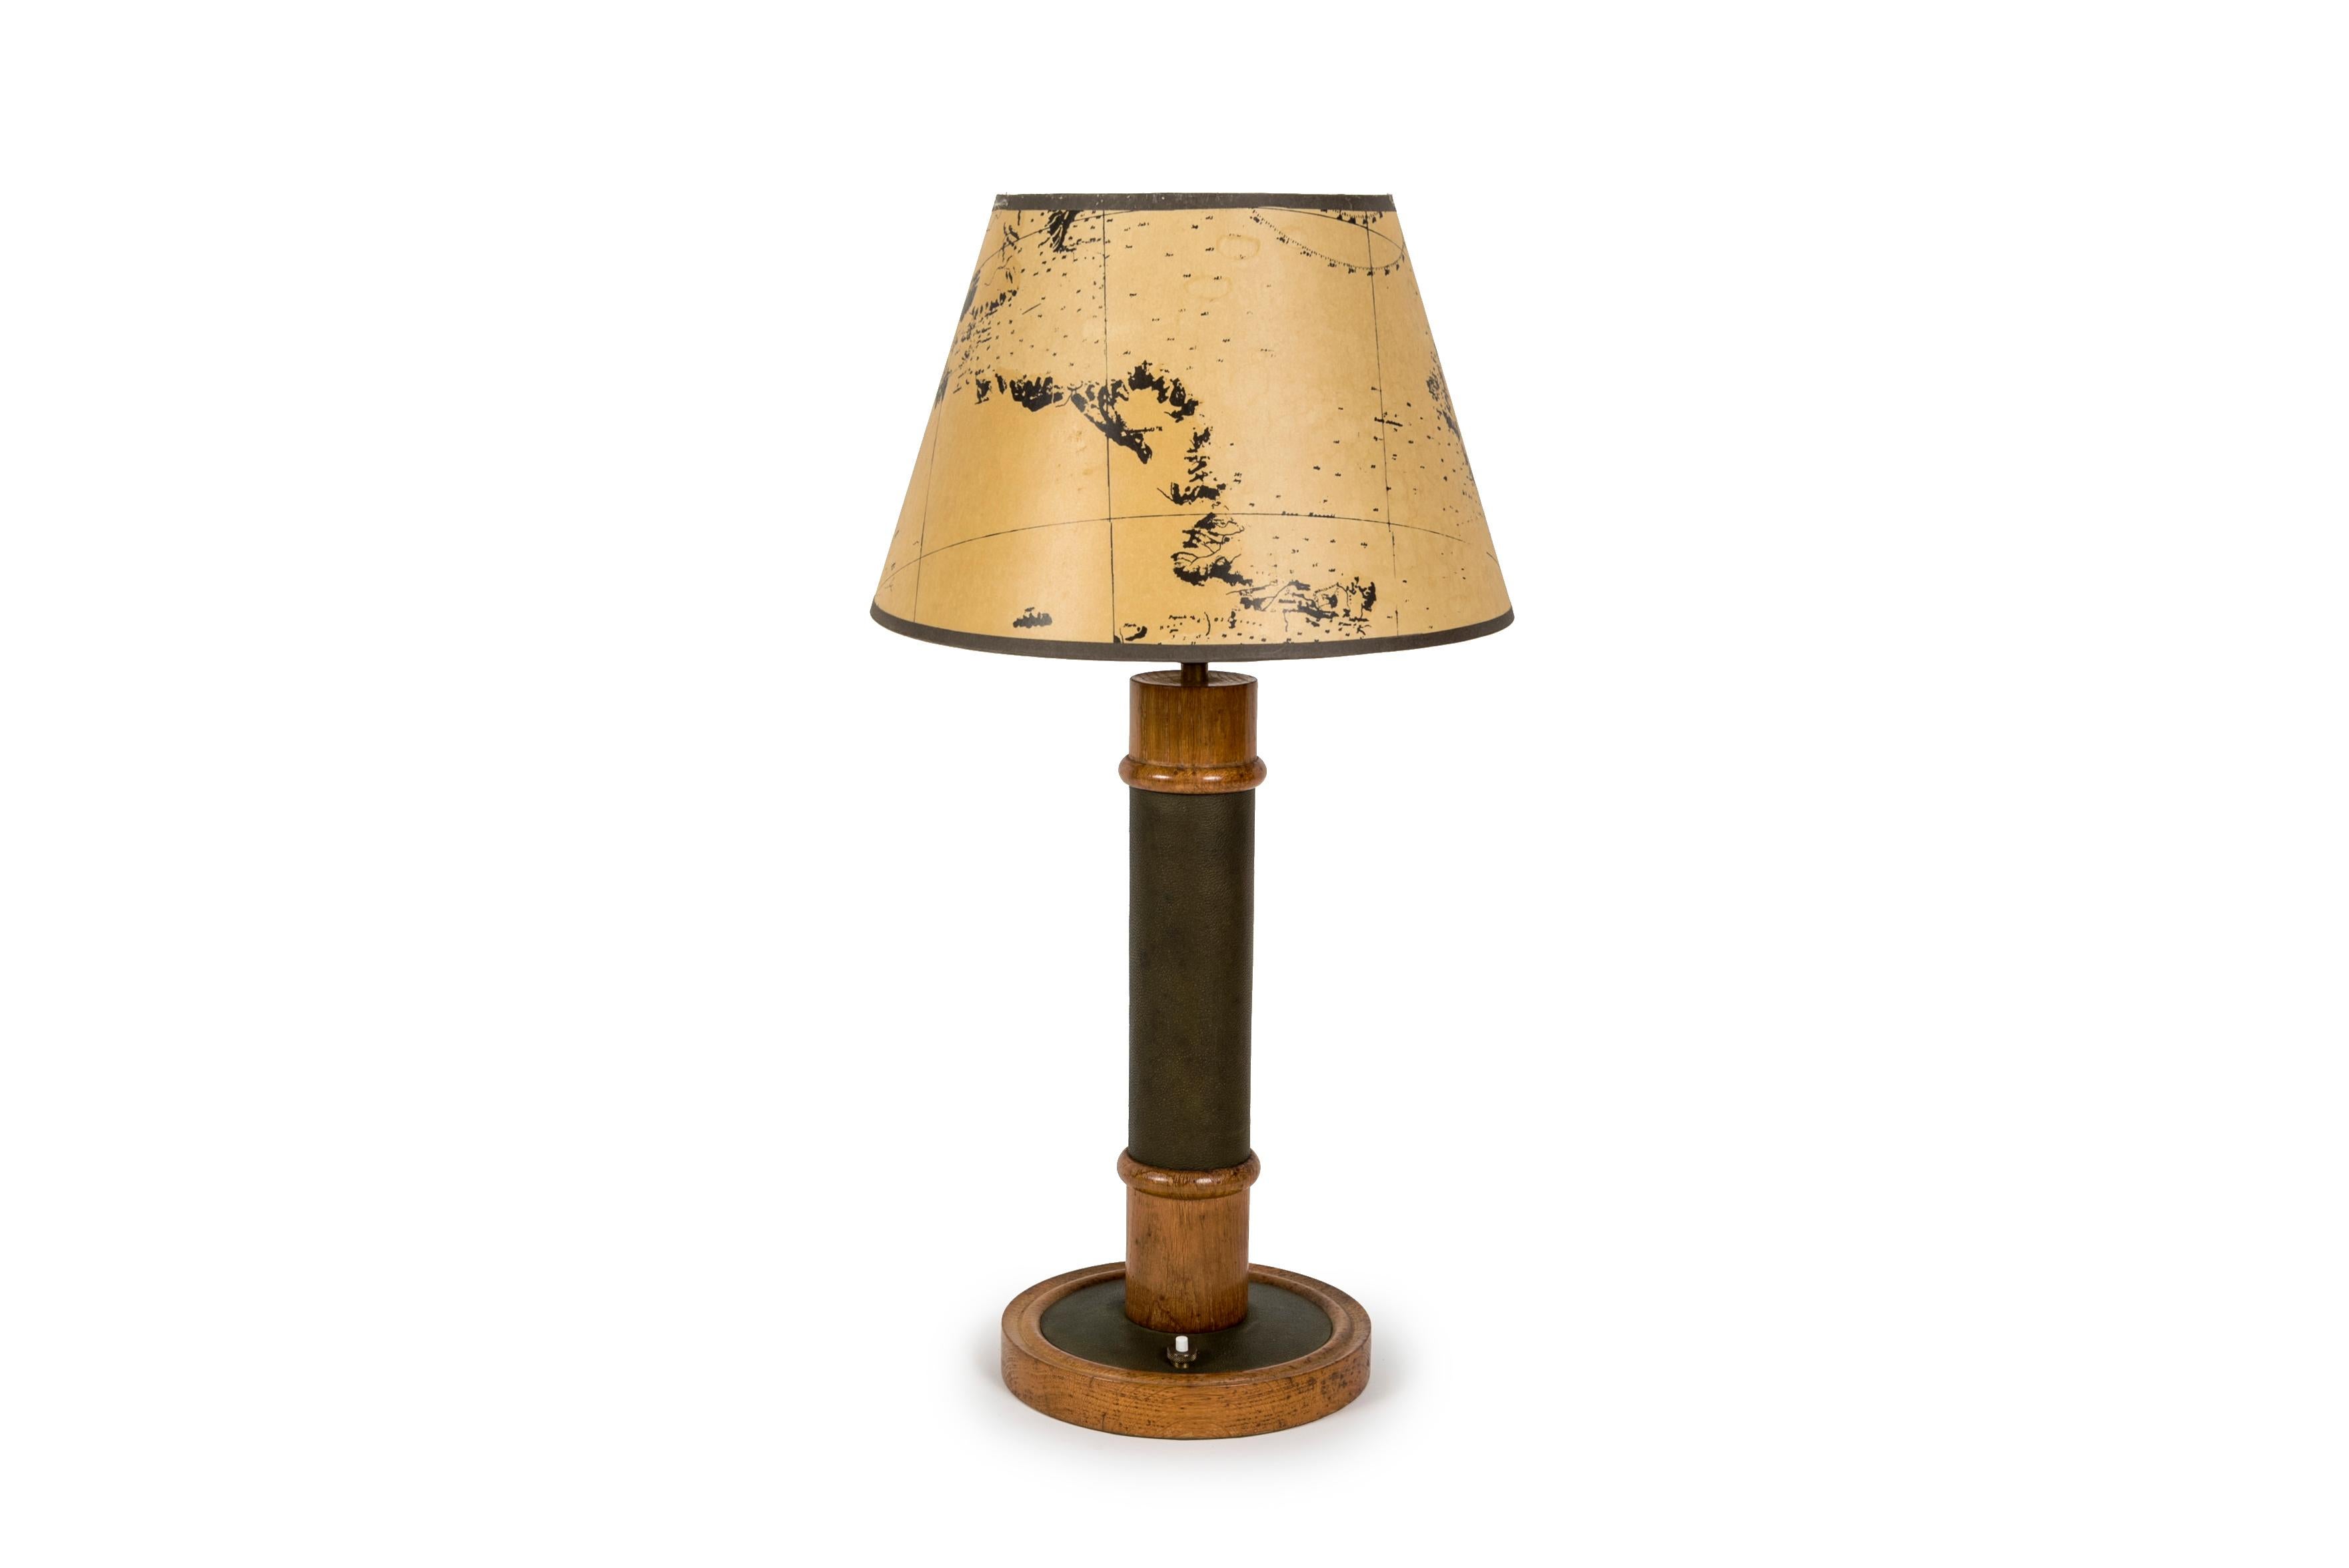 Lampe de table en cuir et chêne des années 1950 à la manière de Paul Dupre-Lafon
Dimensions données sans ombre
Abat-jour non inclus
Ampoule E27 rebranchée.